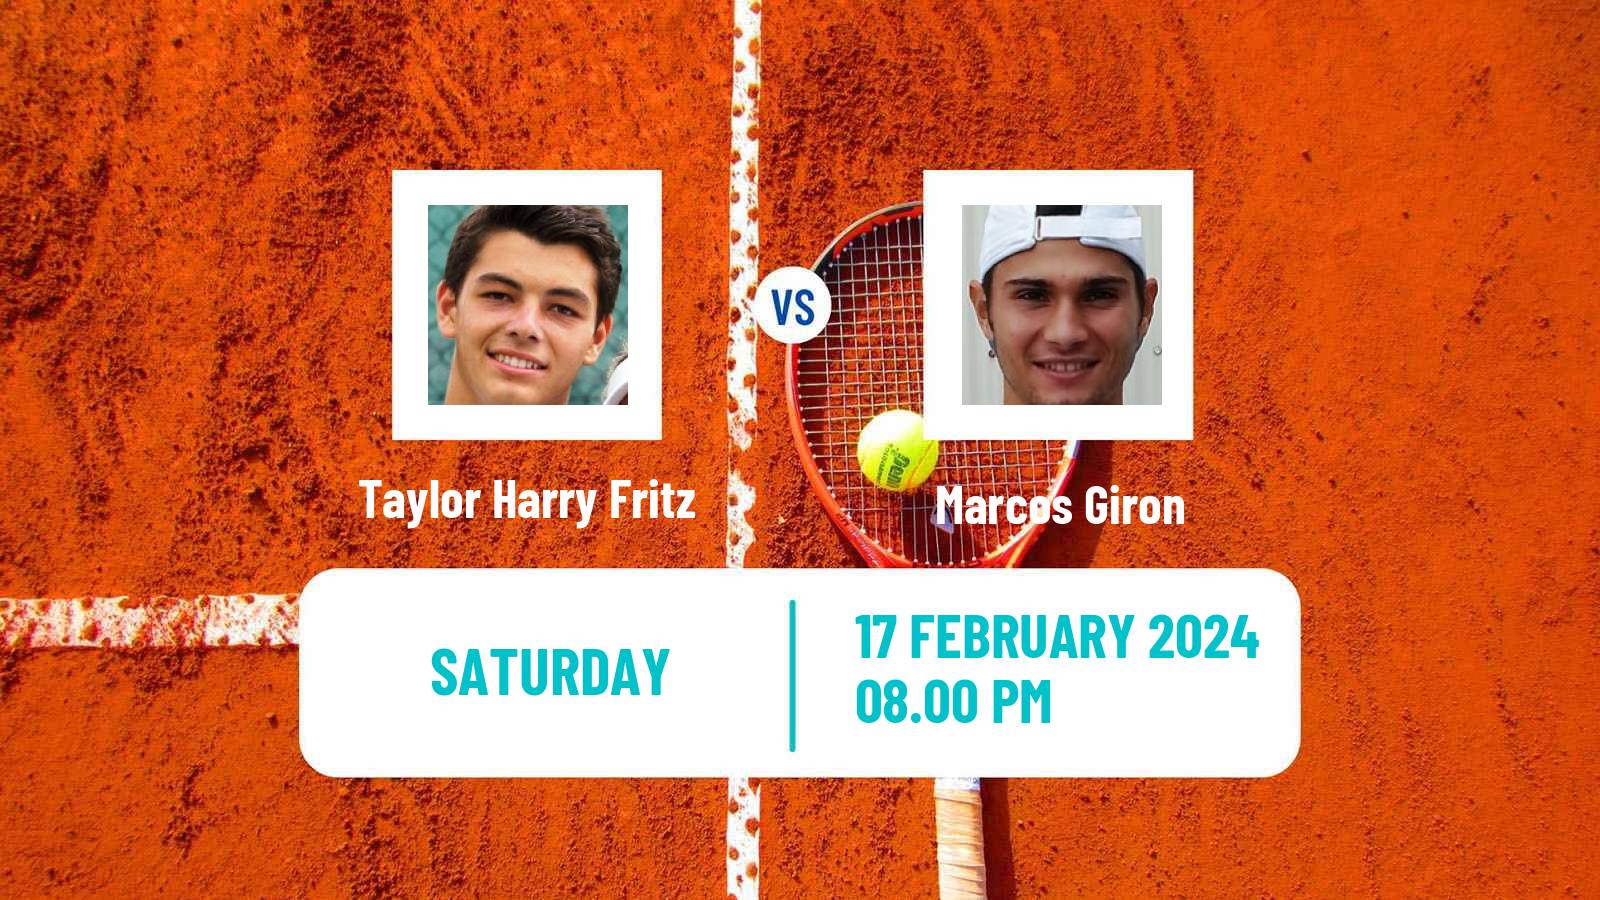 Tennis ATP Delray Beach Taylor Harry Fritz - Marcos Giron